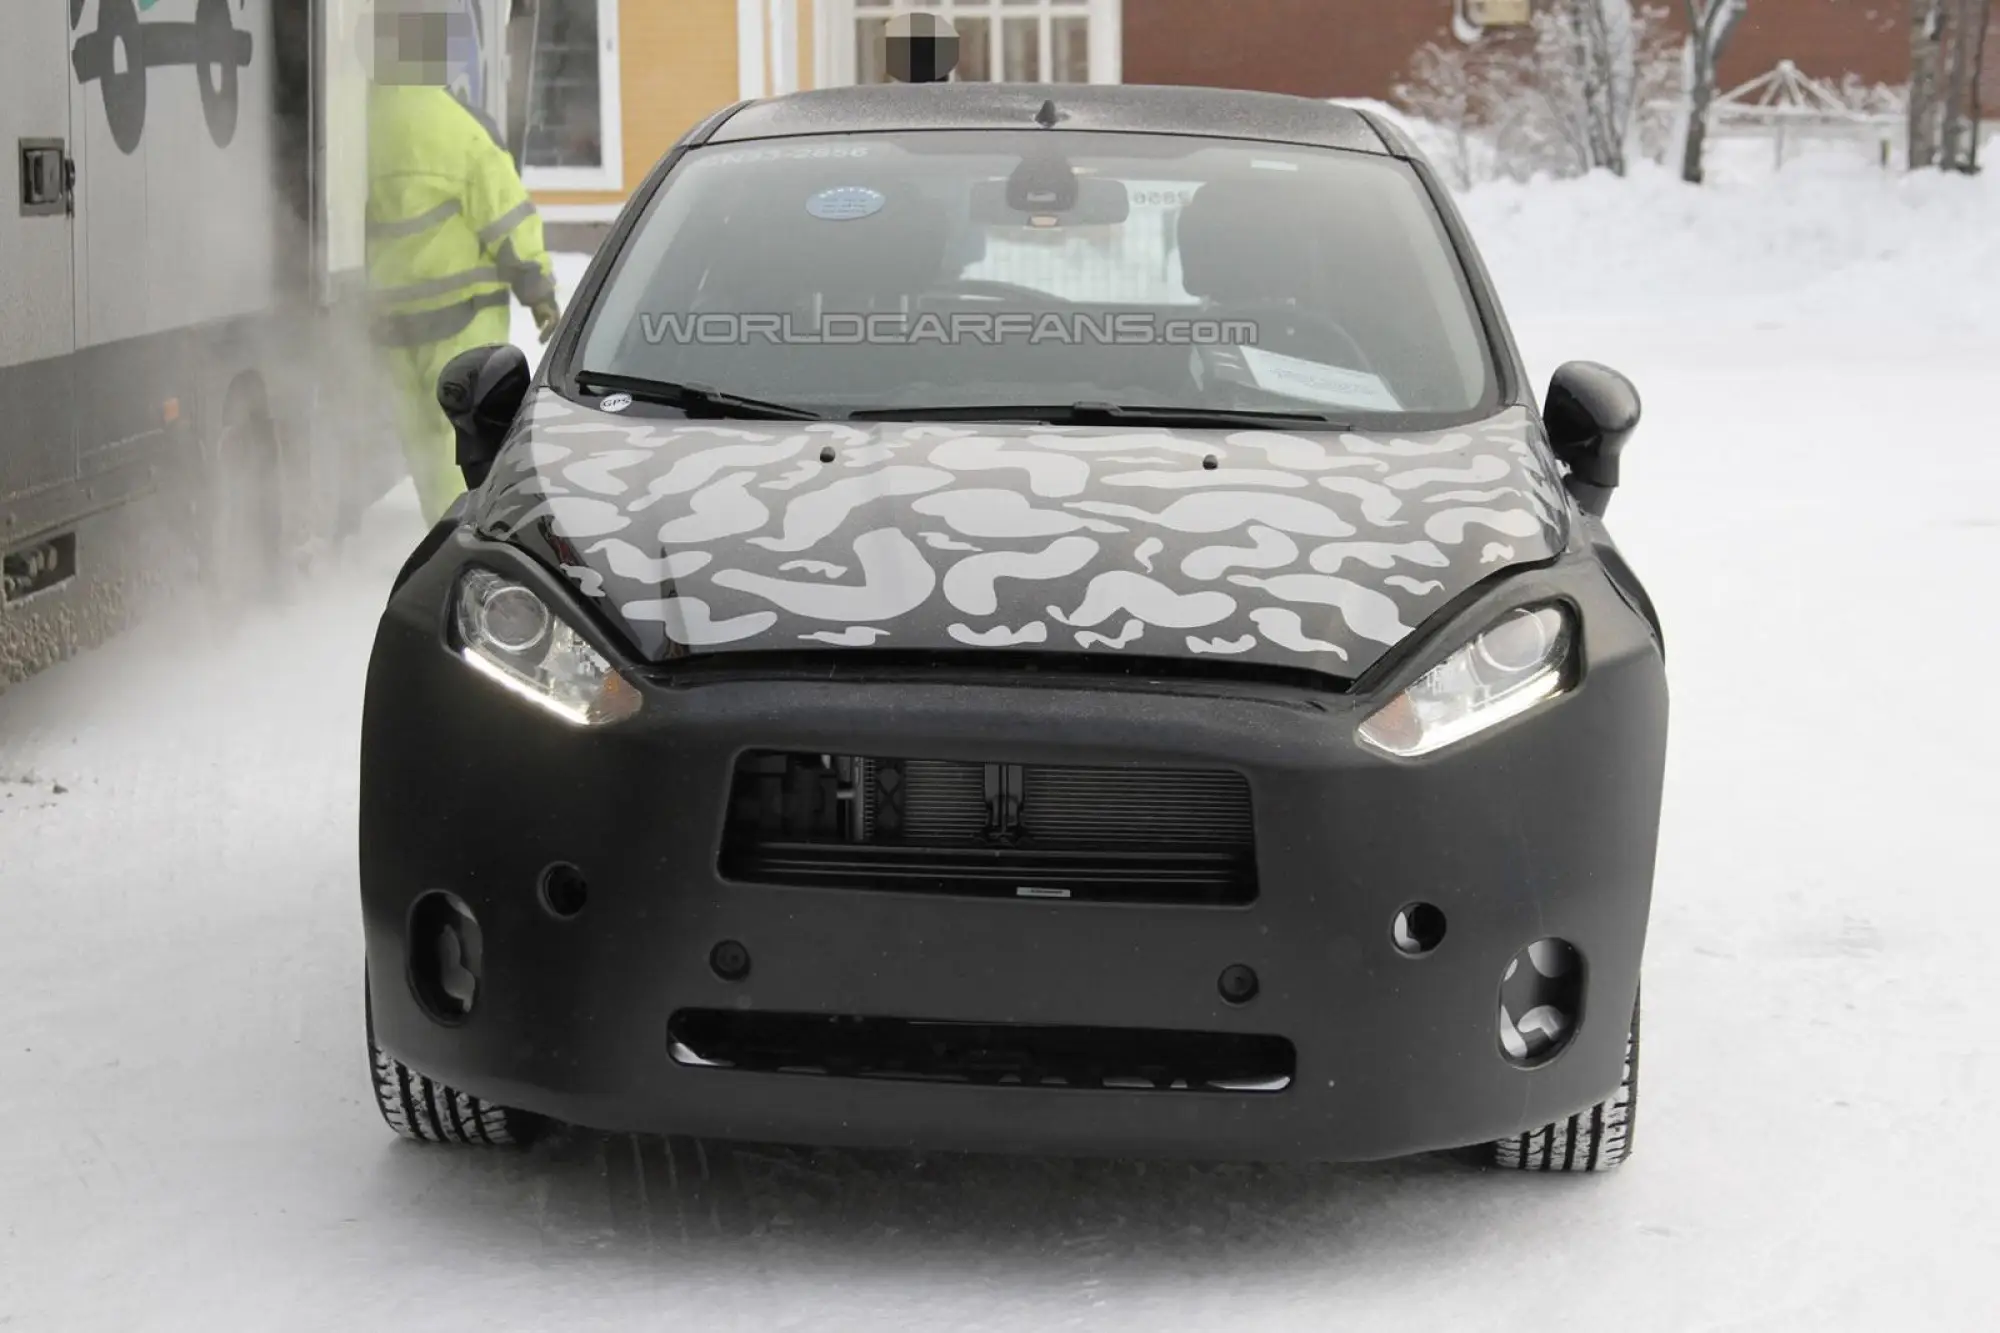 Ford Fiesta restyling foto spia febbraio 2012 - 4